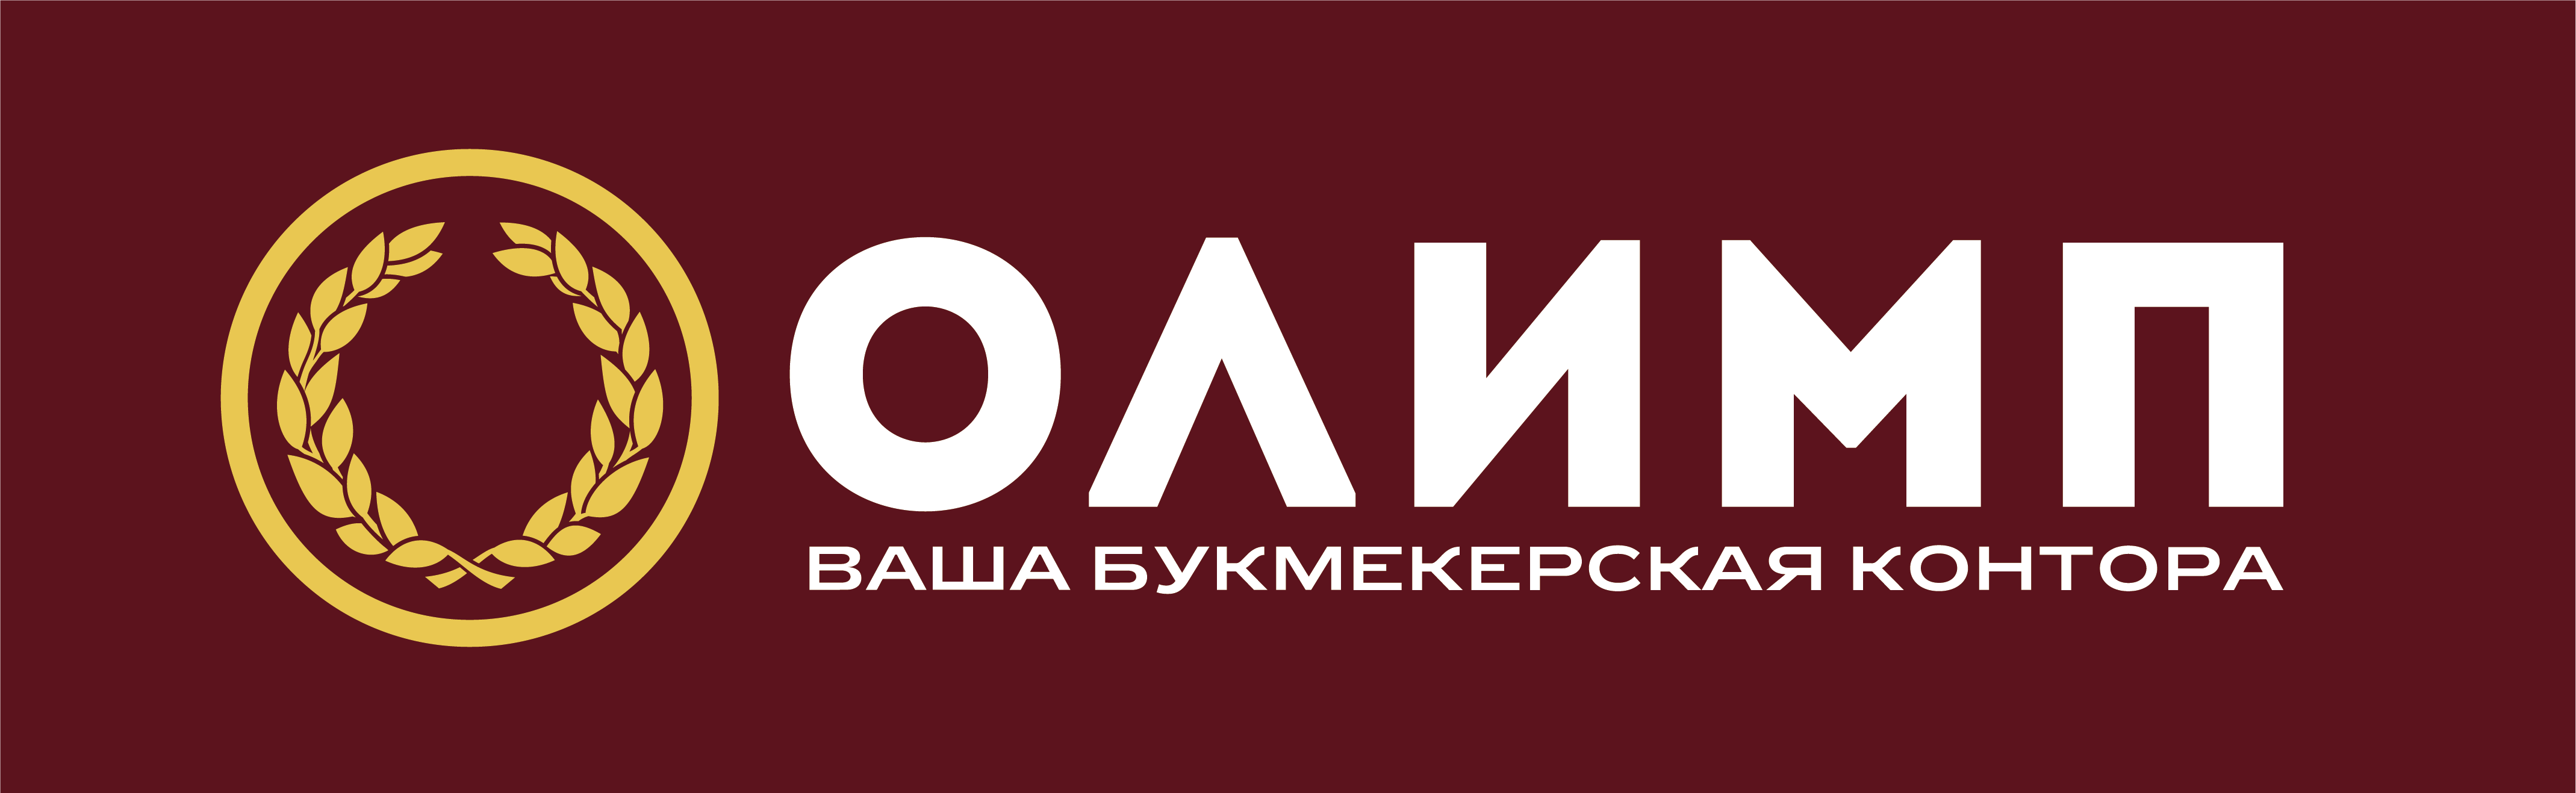 Олимп в россии букмекерская контора покер играть бесплатно без регистрации на русском языке онлайн